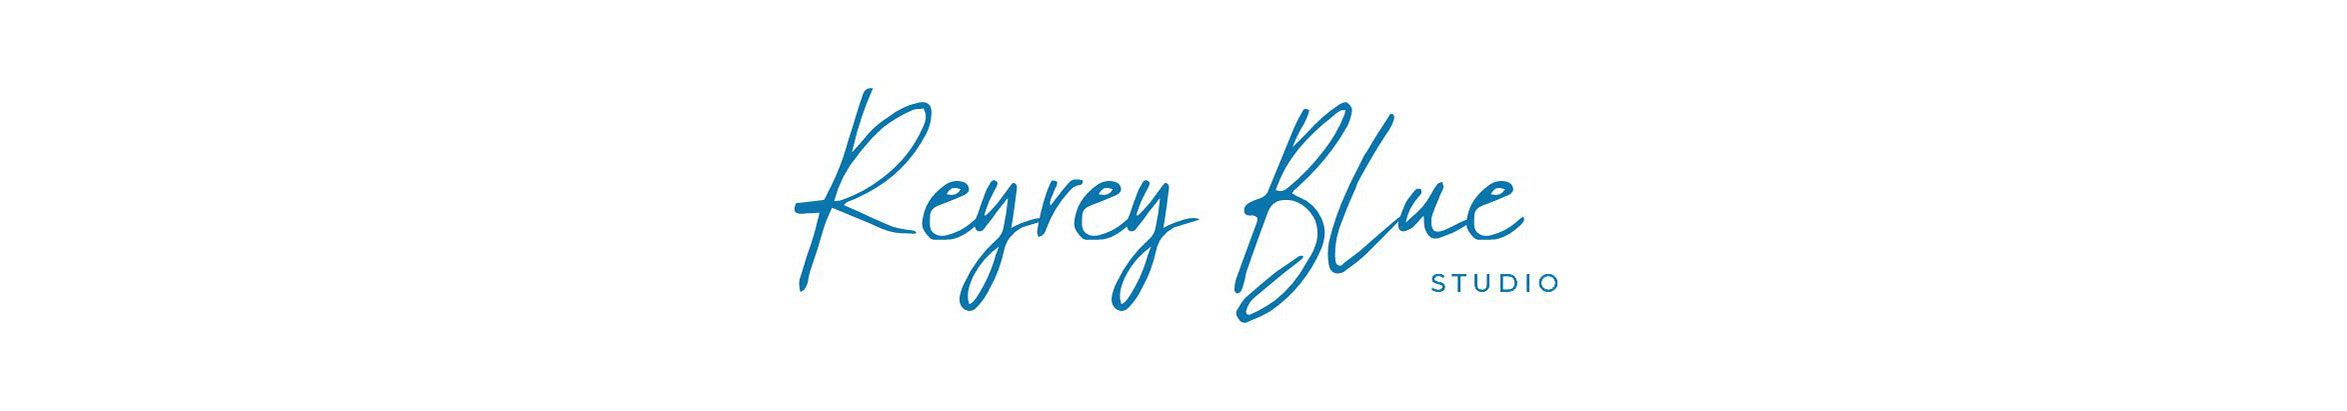 Banner de perfil de ReyReyBlue Studio